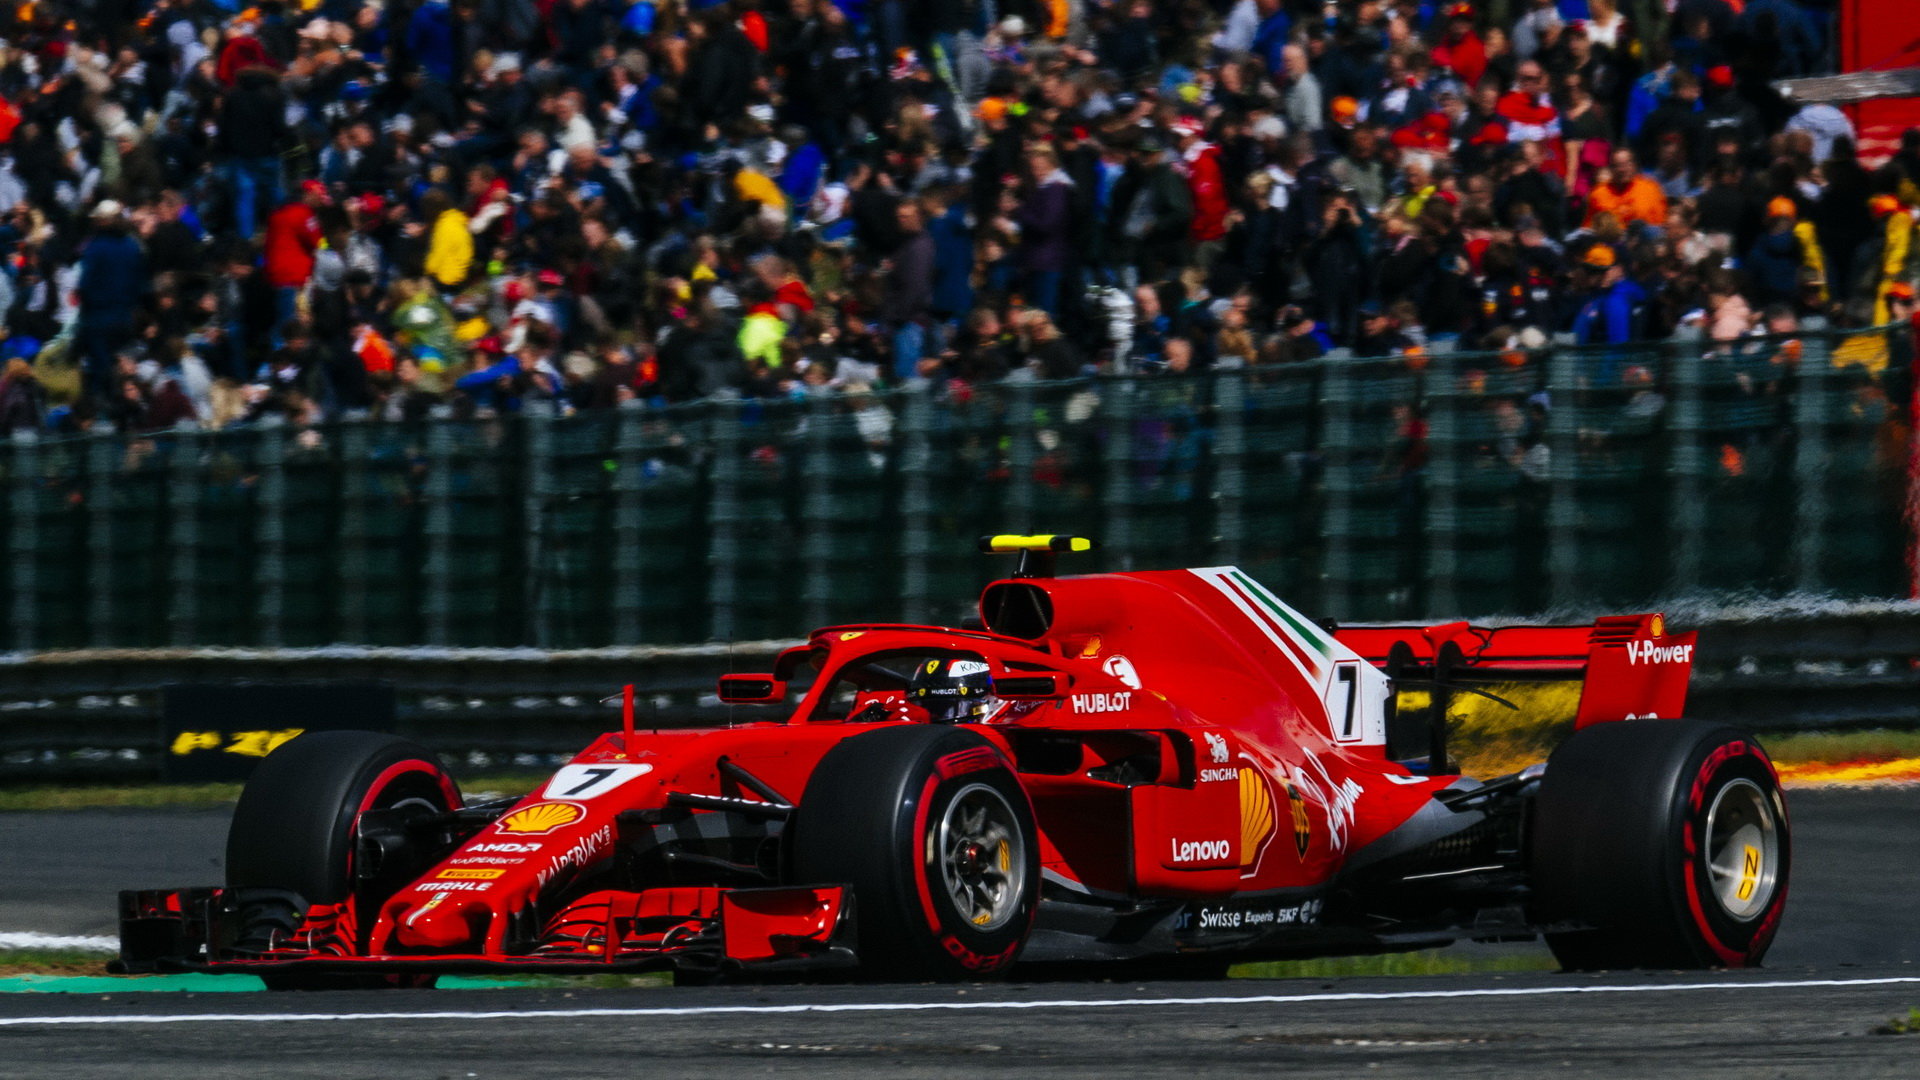 Kimi Räikkönen si užije posledních pár závodů za Ferrari, poté bude ještě 2 roky pokračovat u Sauberu